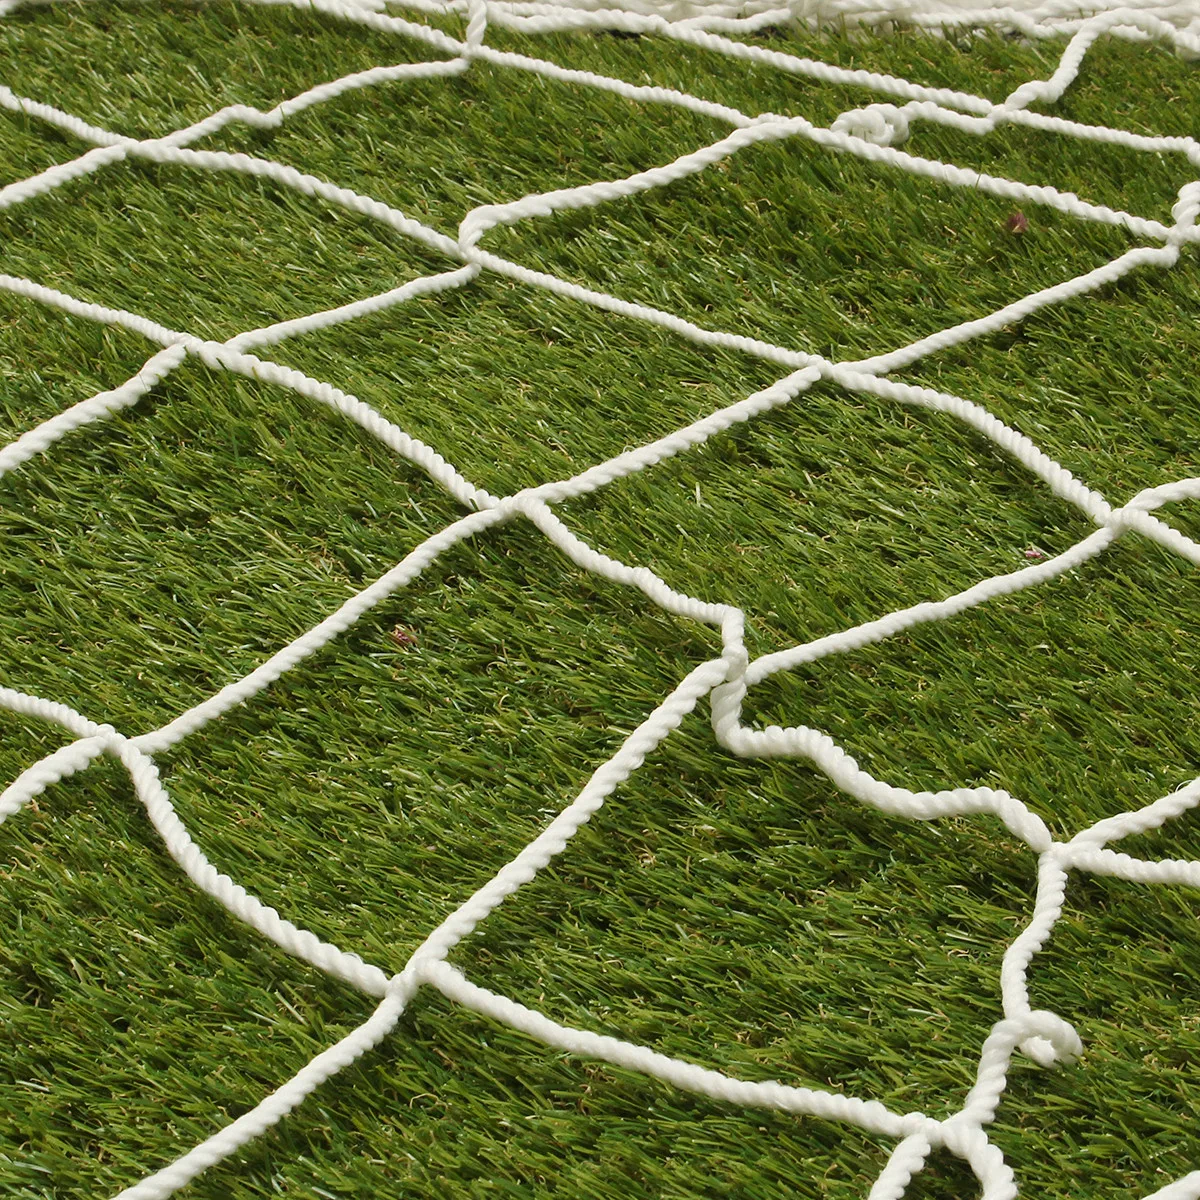 5 размеров сетка для футбольных ворот футбольные ворота с сеткой полипропиленовая футбольная сетка для футбольной ворота для детей младшего возраста Спортивная тренировка